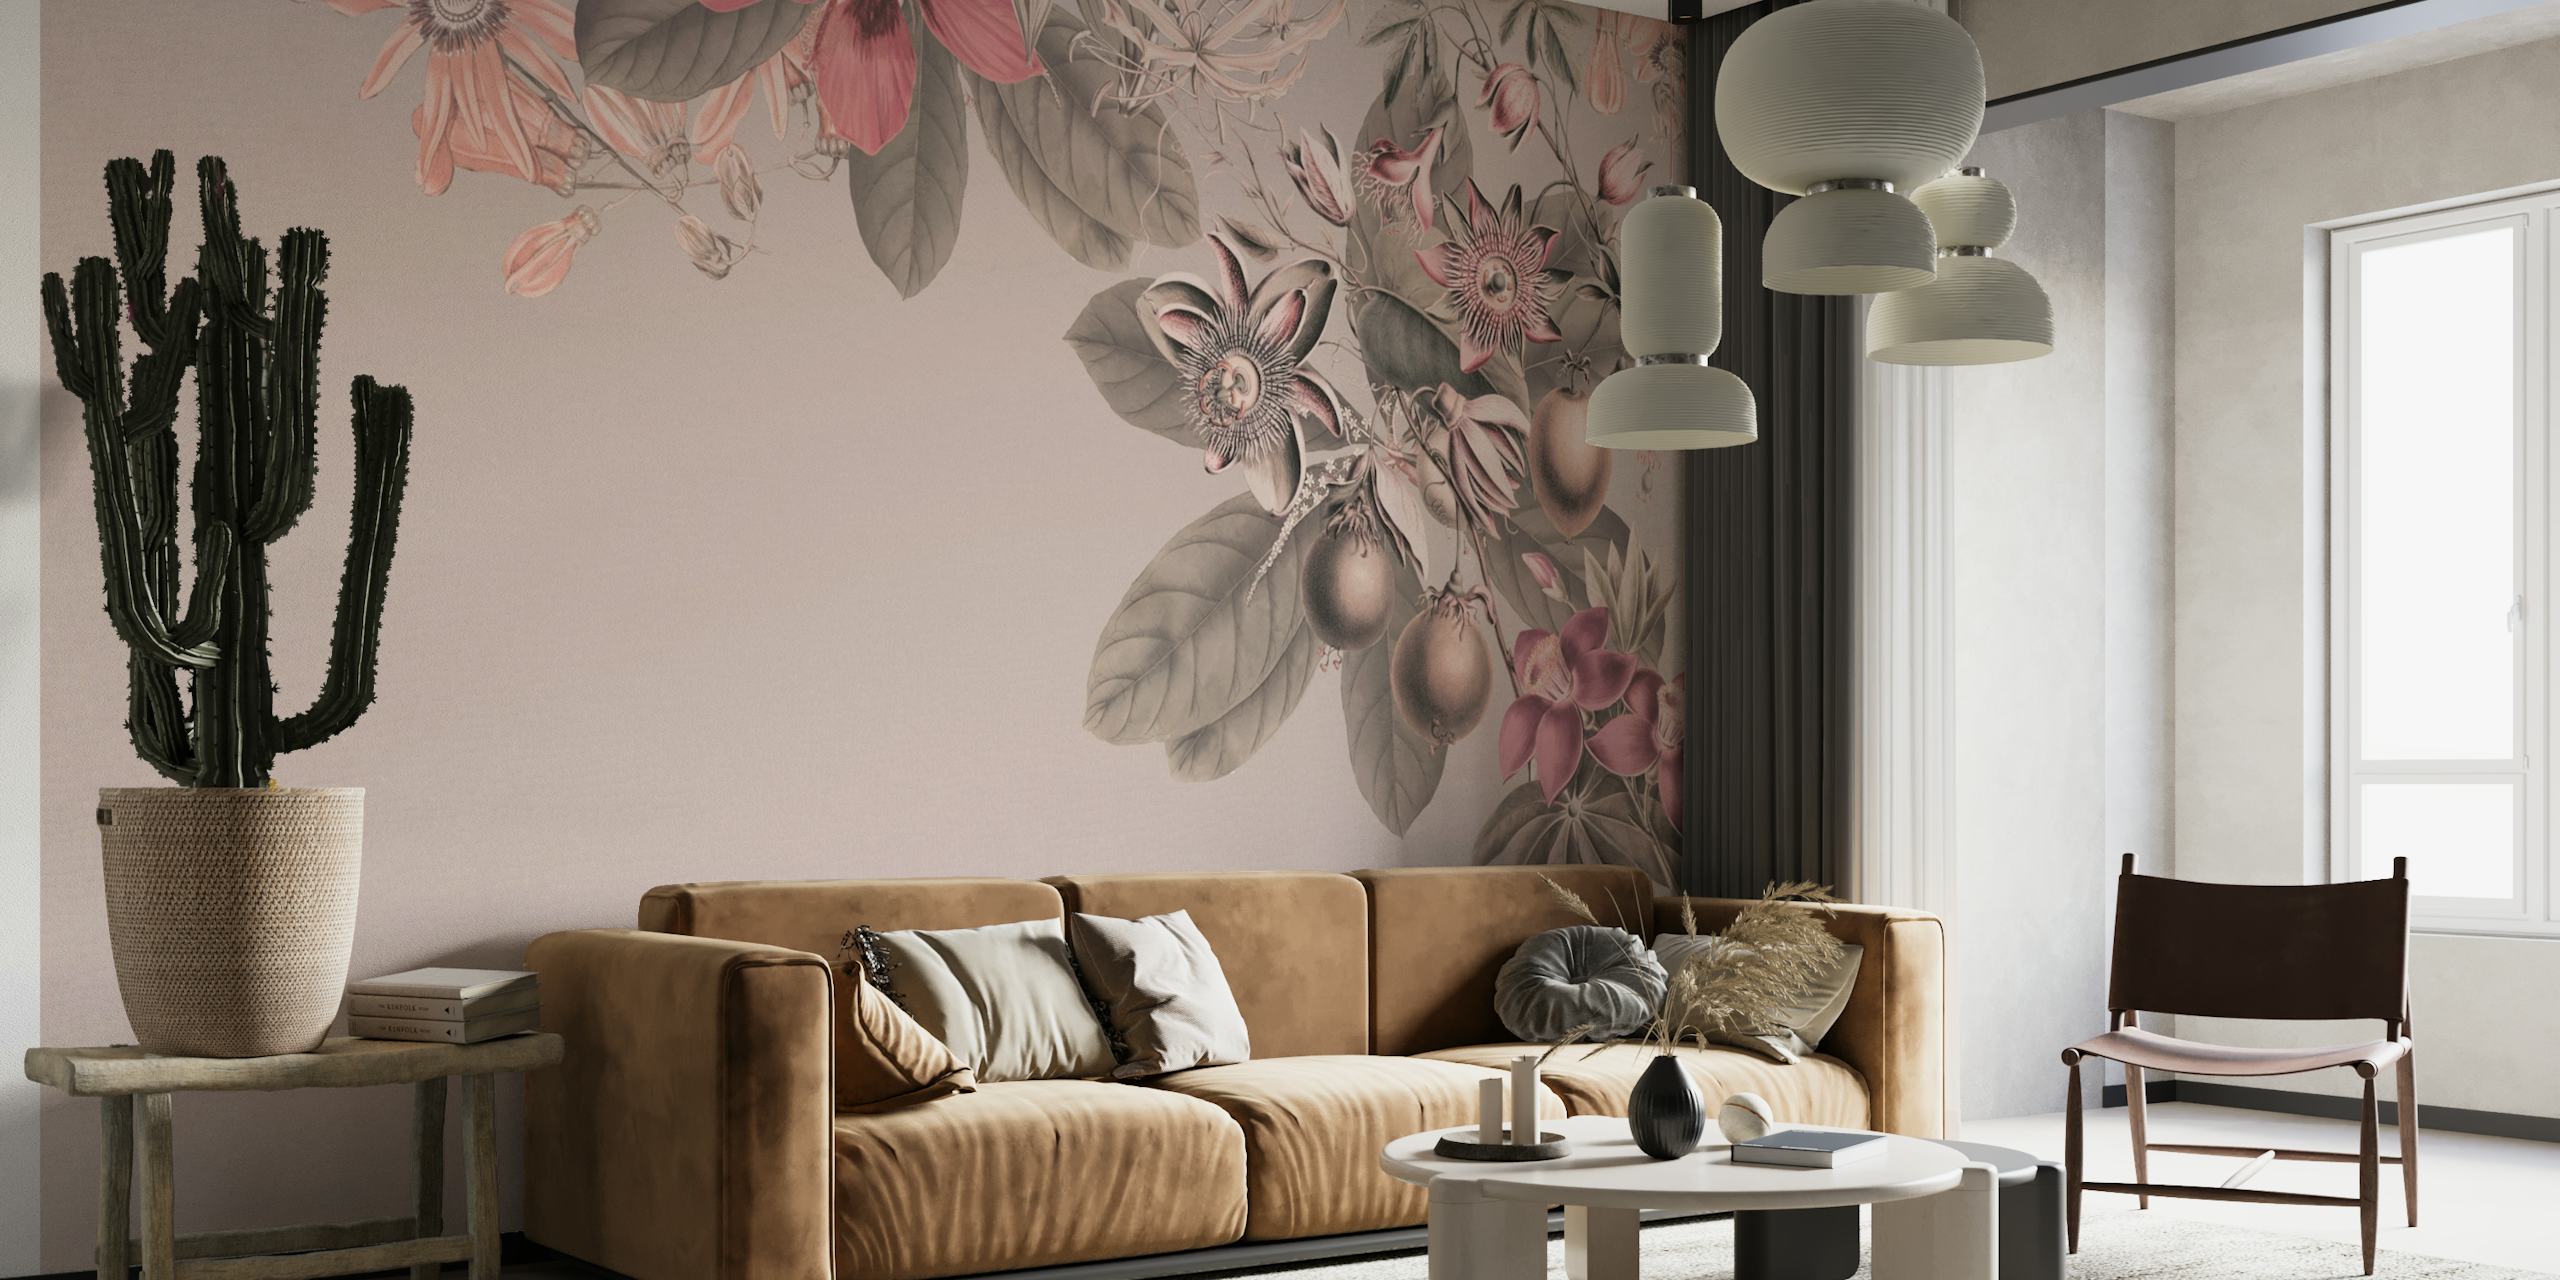 flores tropicais rosa pastel em um fotomural vinílico de parede com fundo silencioso